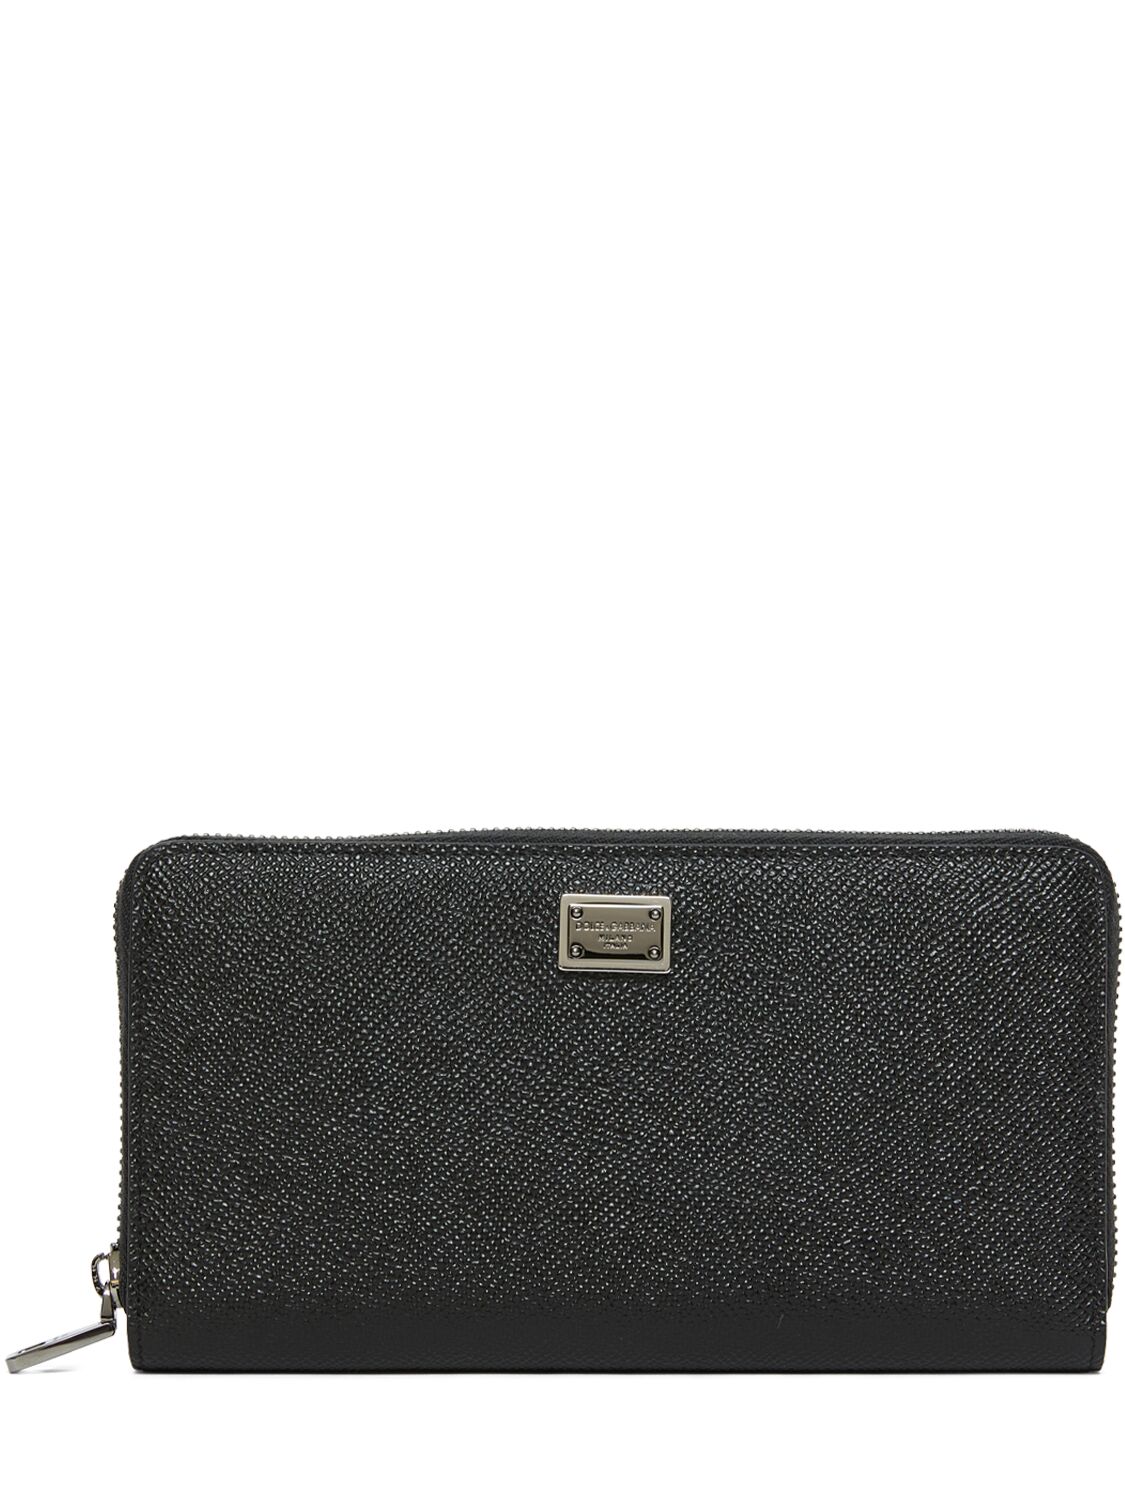 Dolce & Gabbana Dauphine Leather Zip Around Wallet In Black